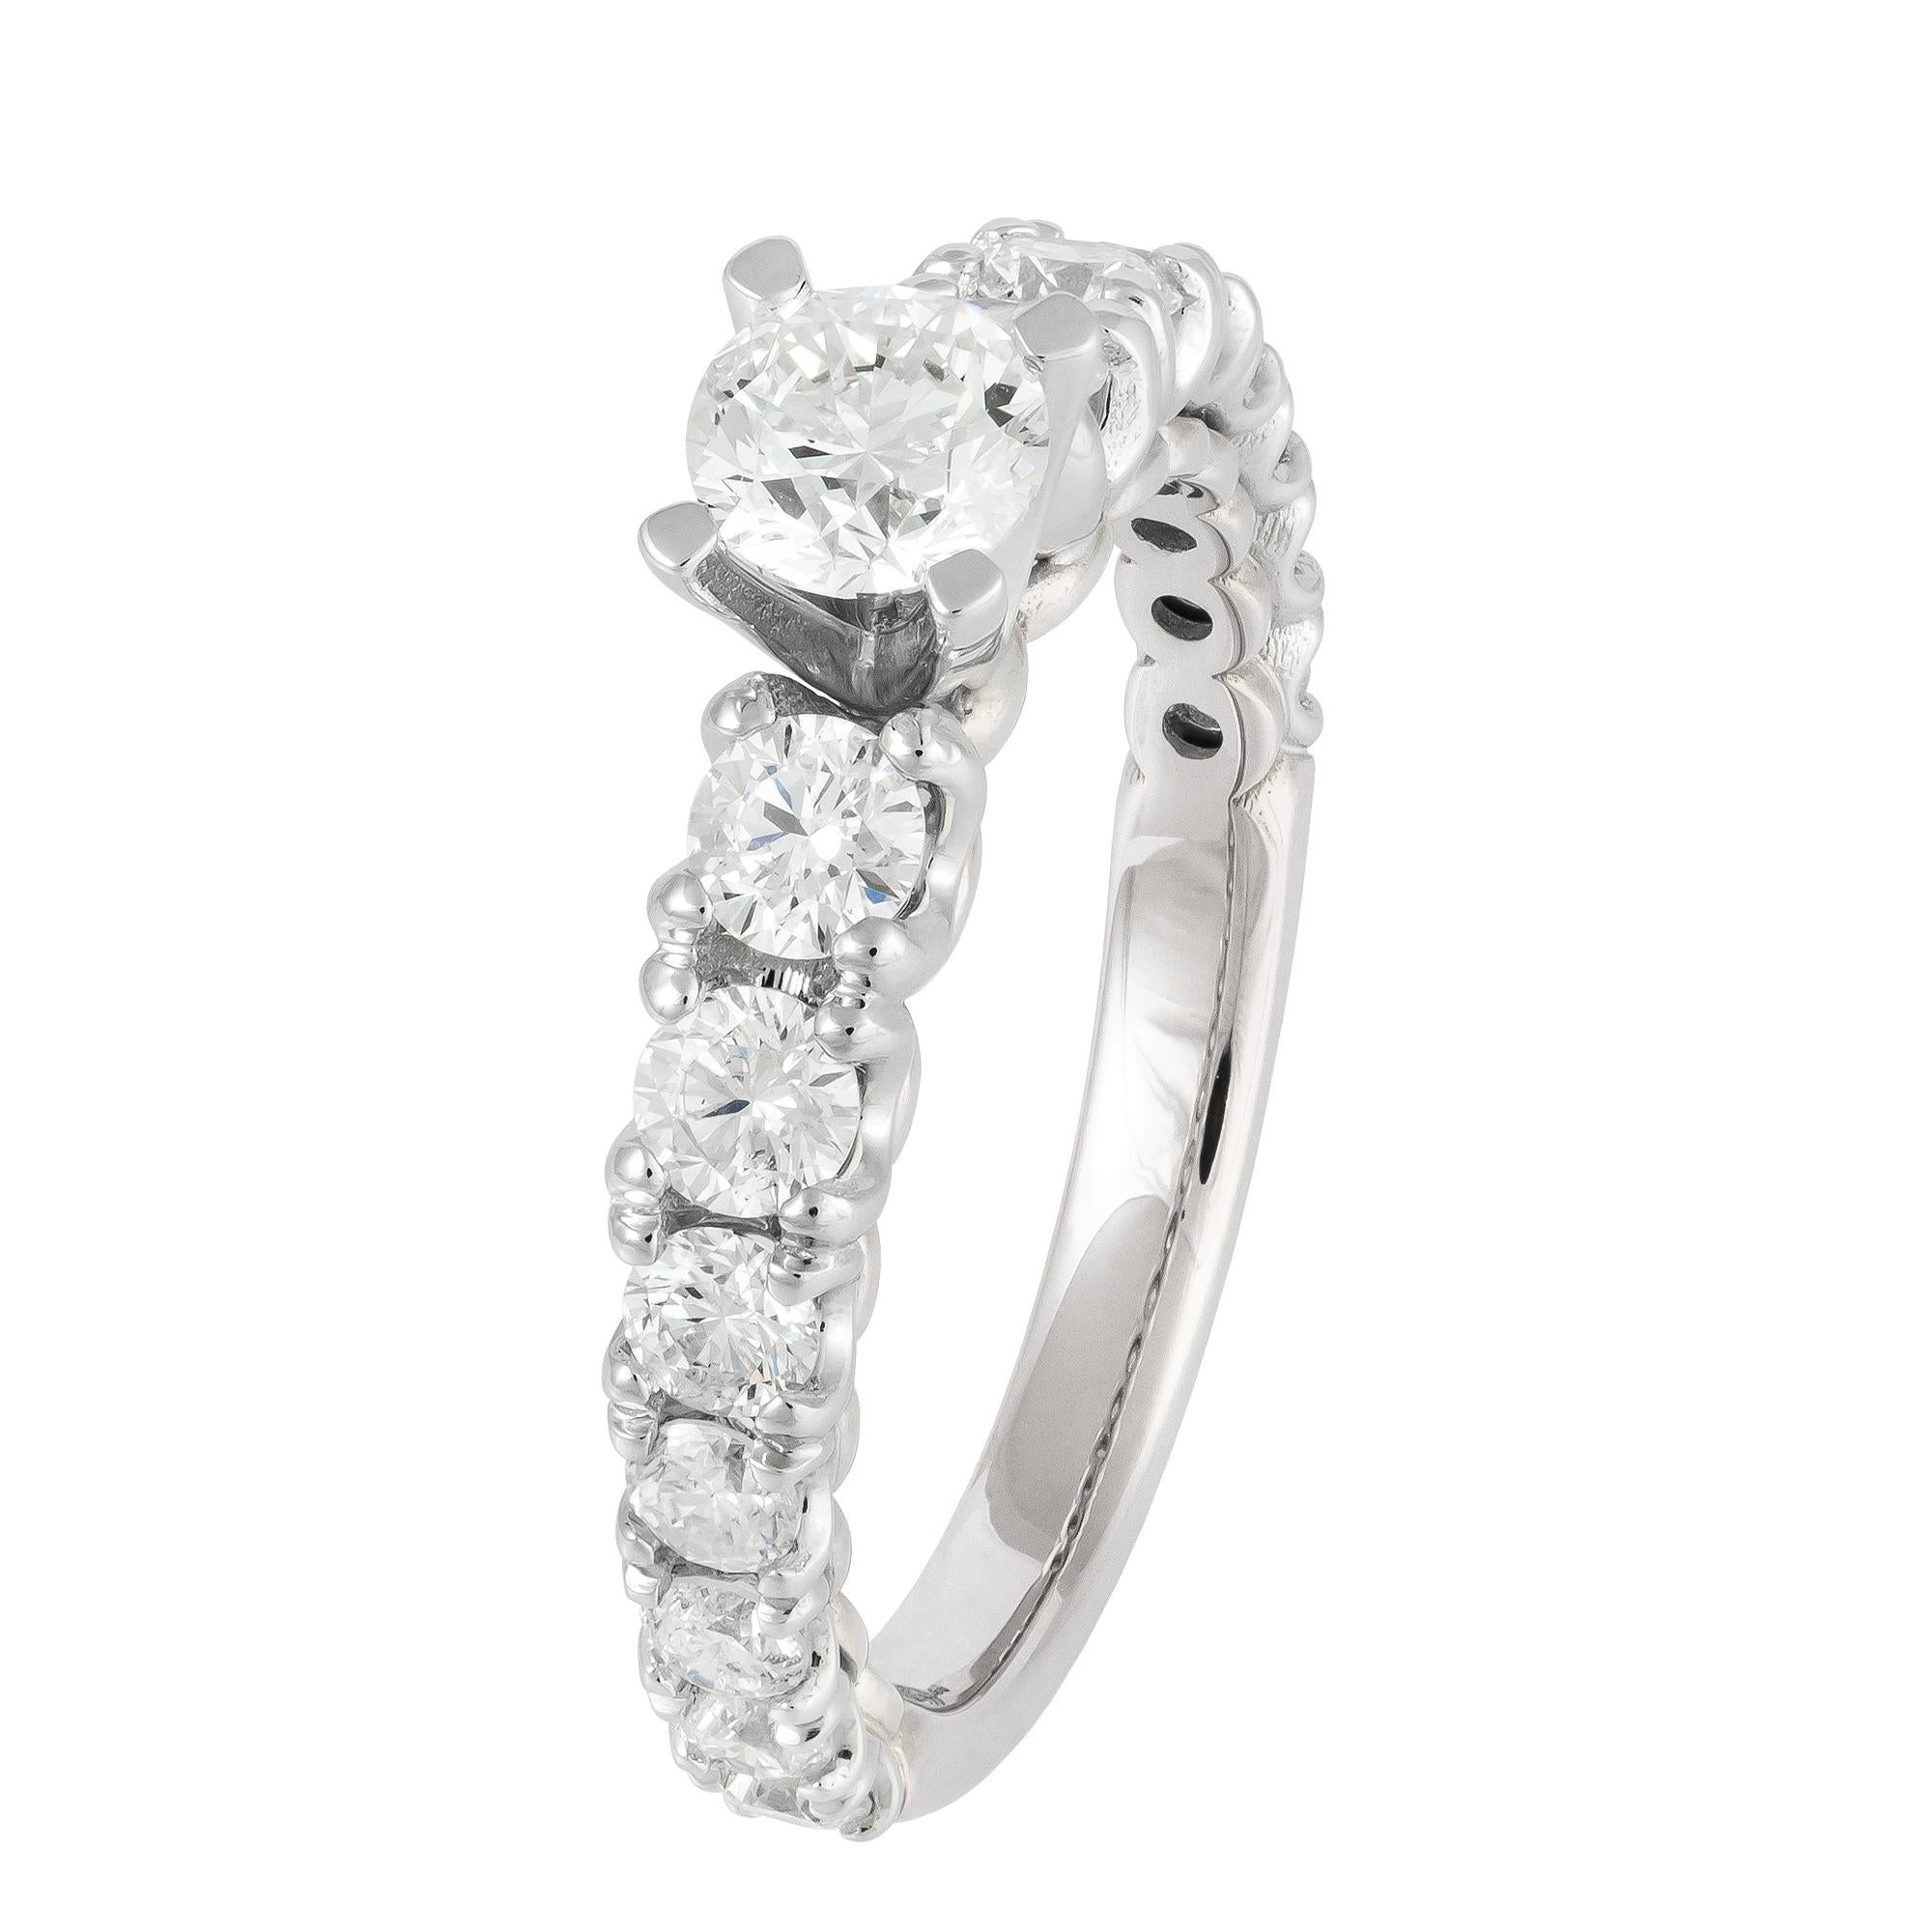 For Sale:  Breathtaking White 18K Gold White Diamond Ring For Her 2